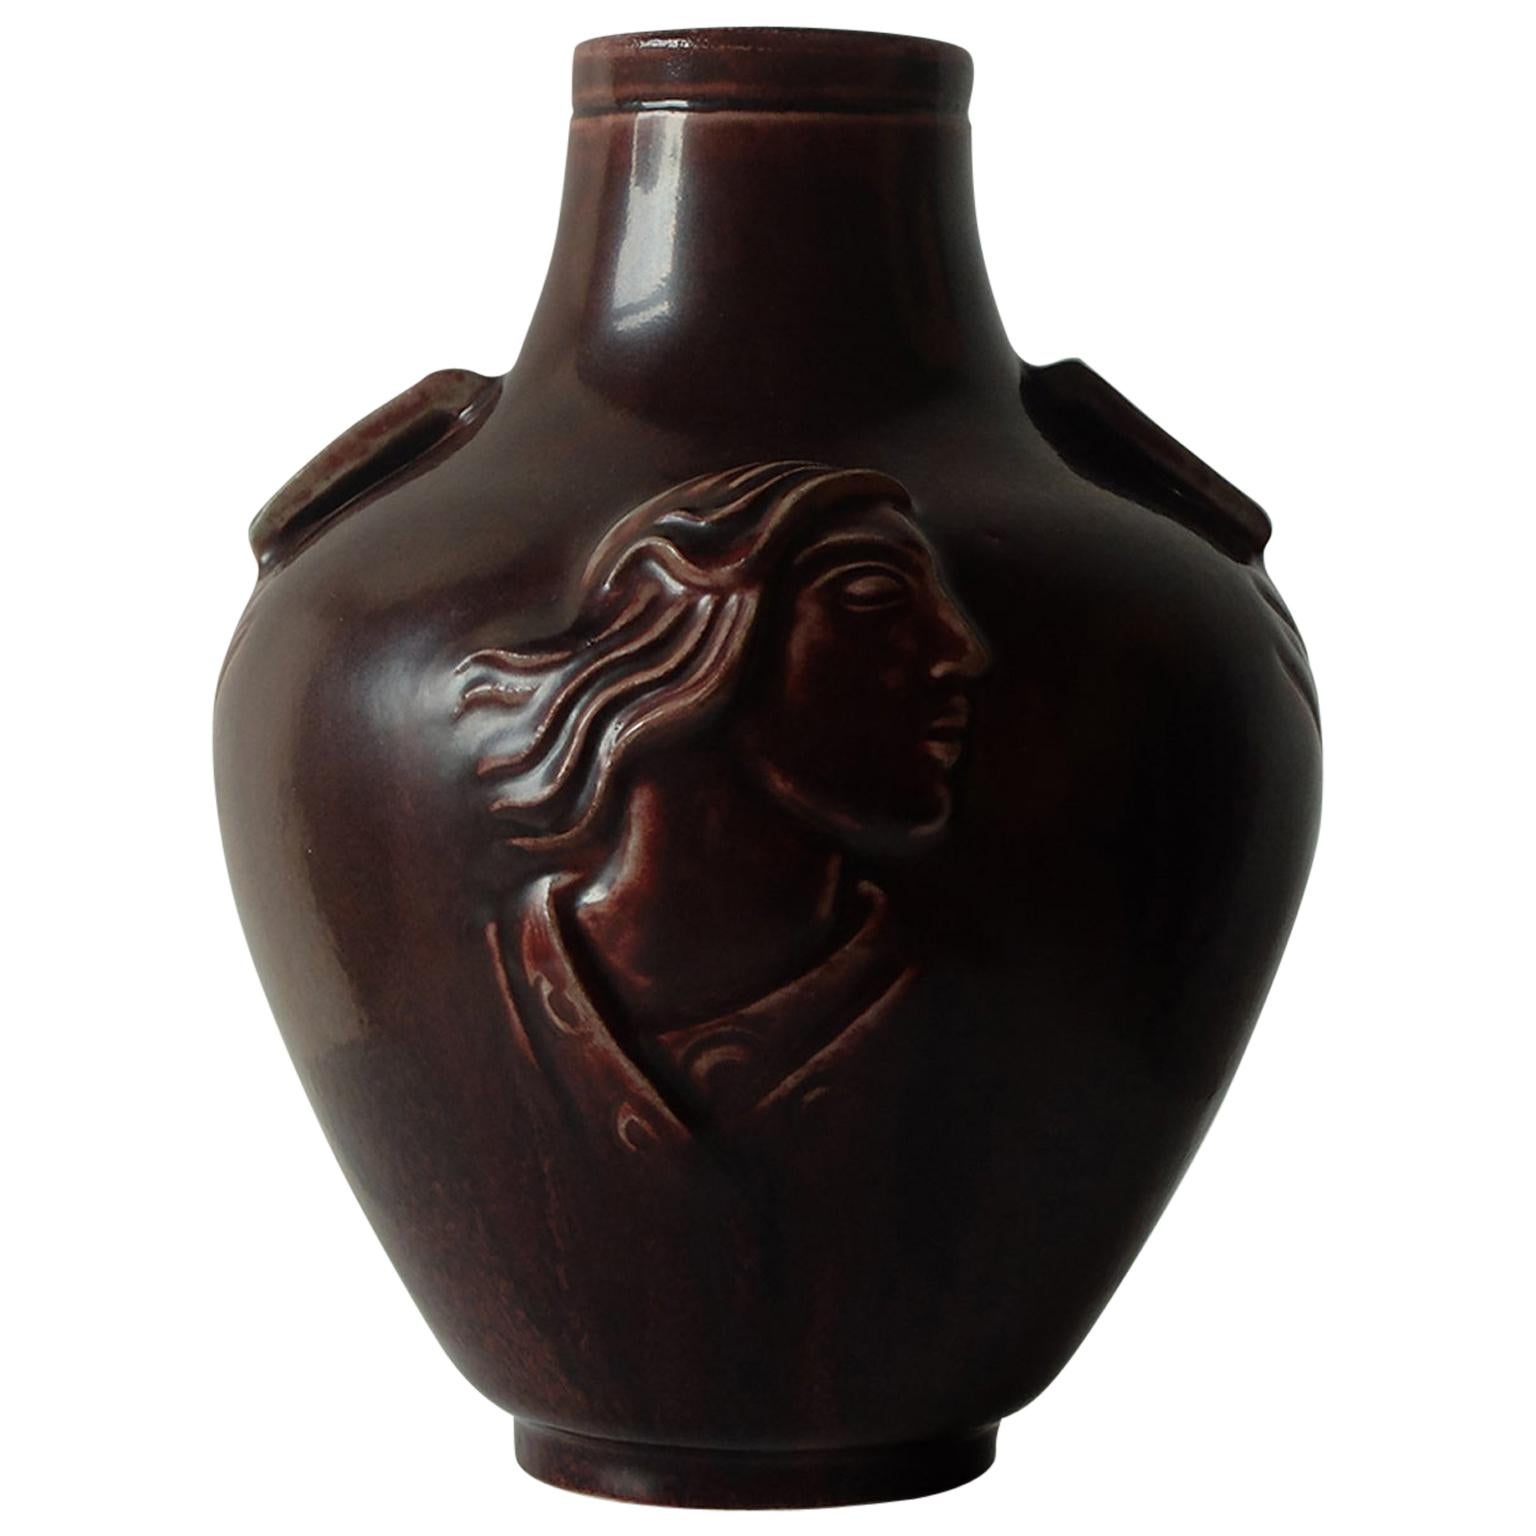 Jais Nielsen for Royal Copenhagen, Ceramic Vase in Oxblood Glaze, 1930s